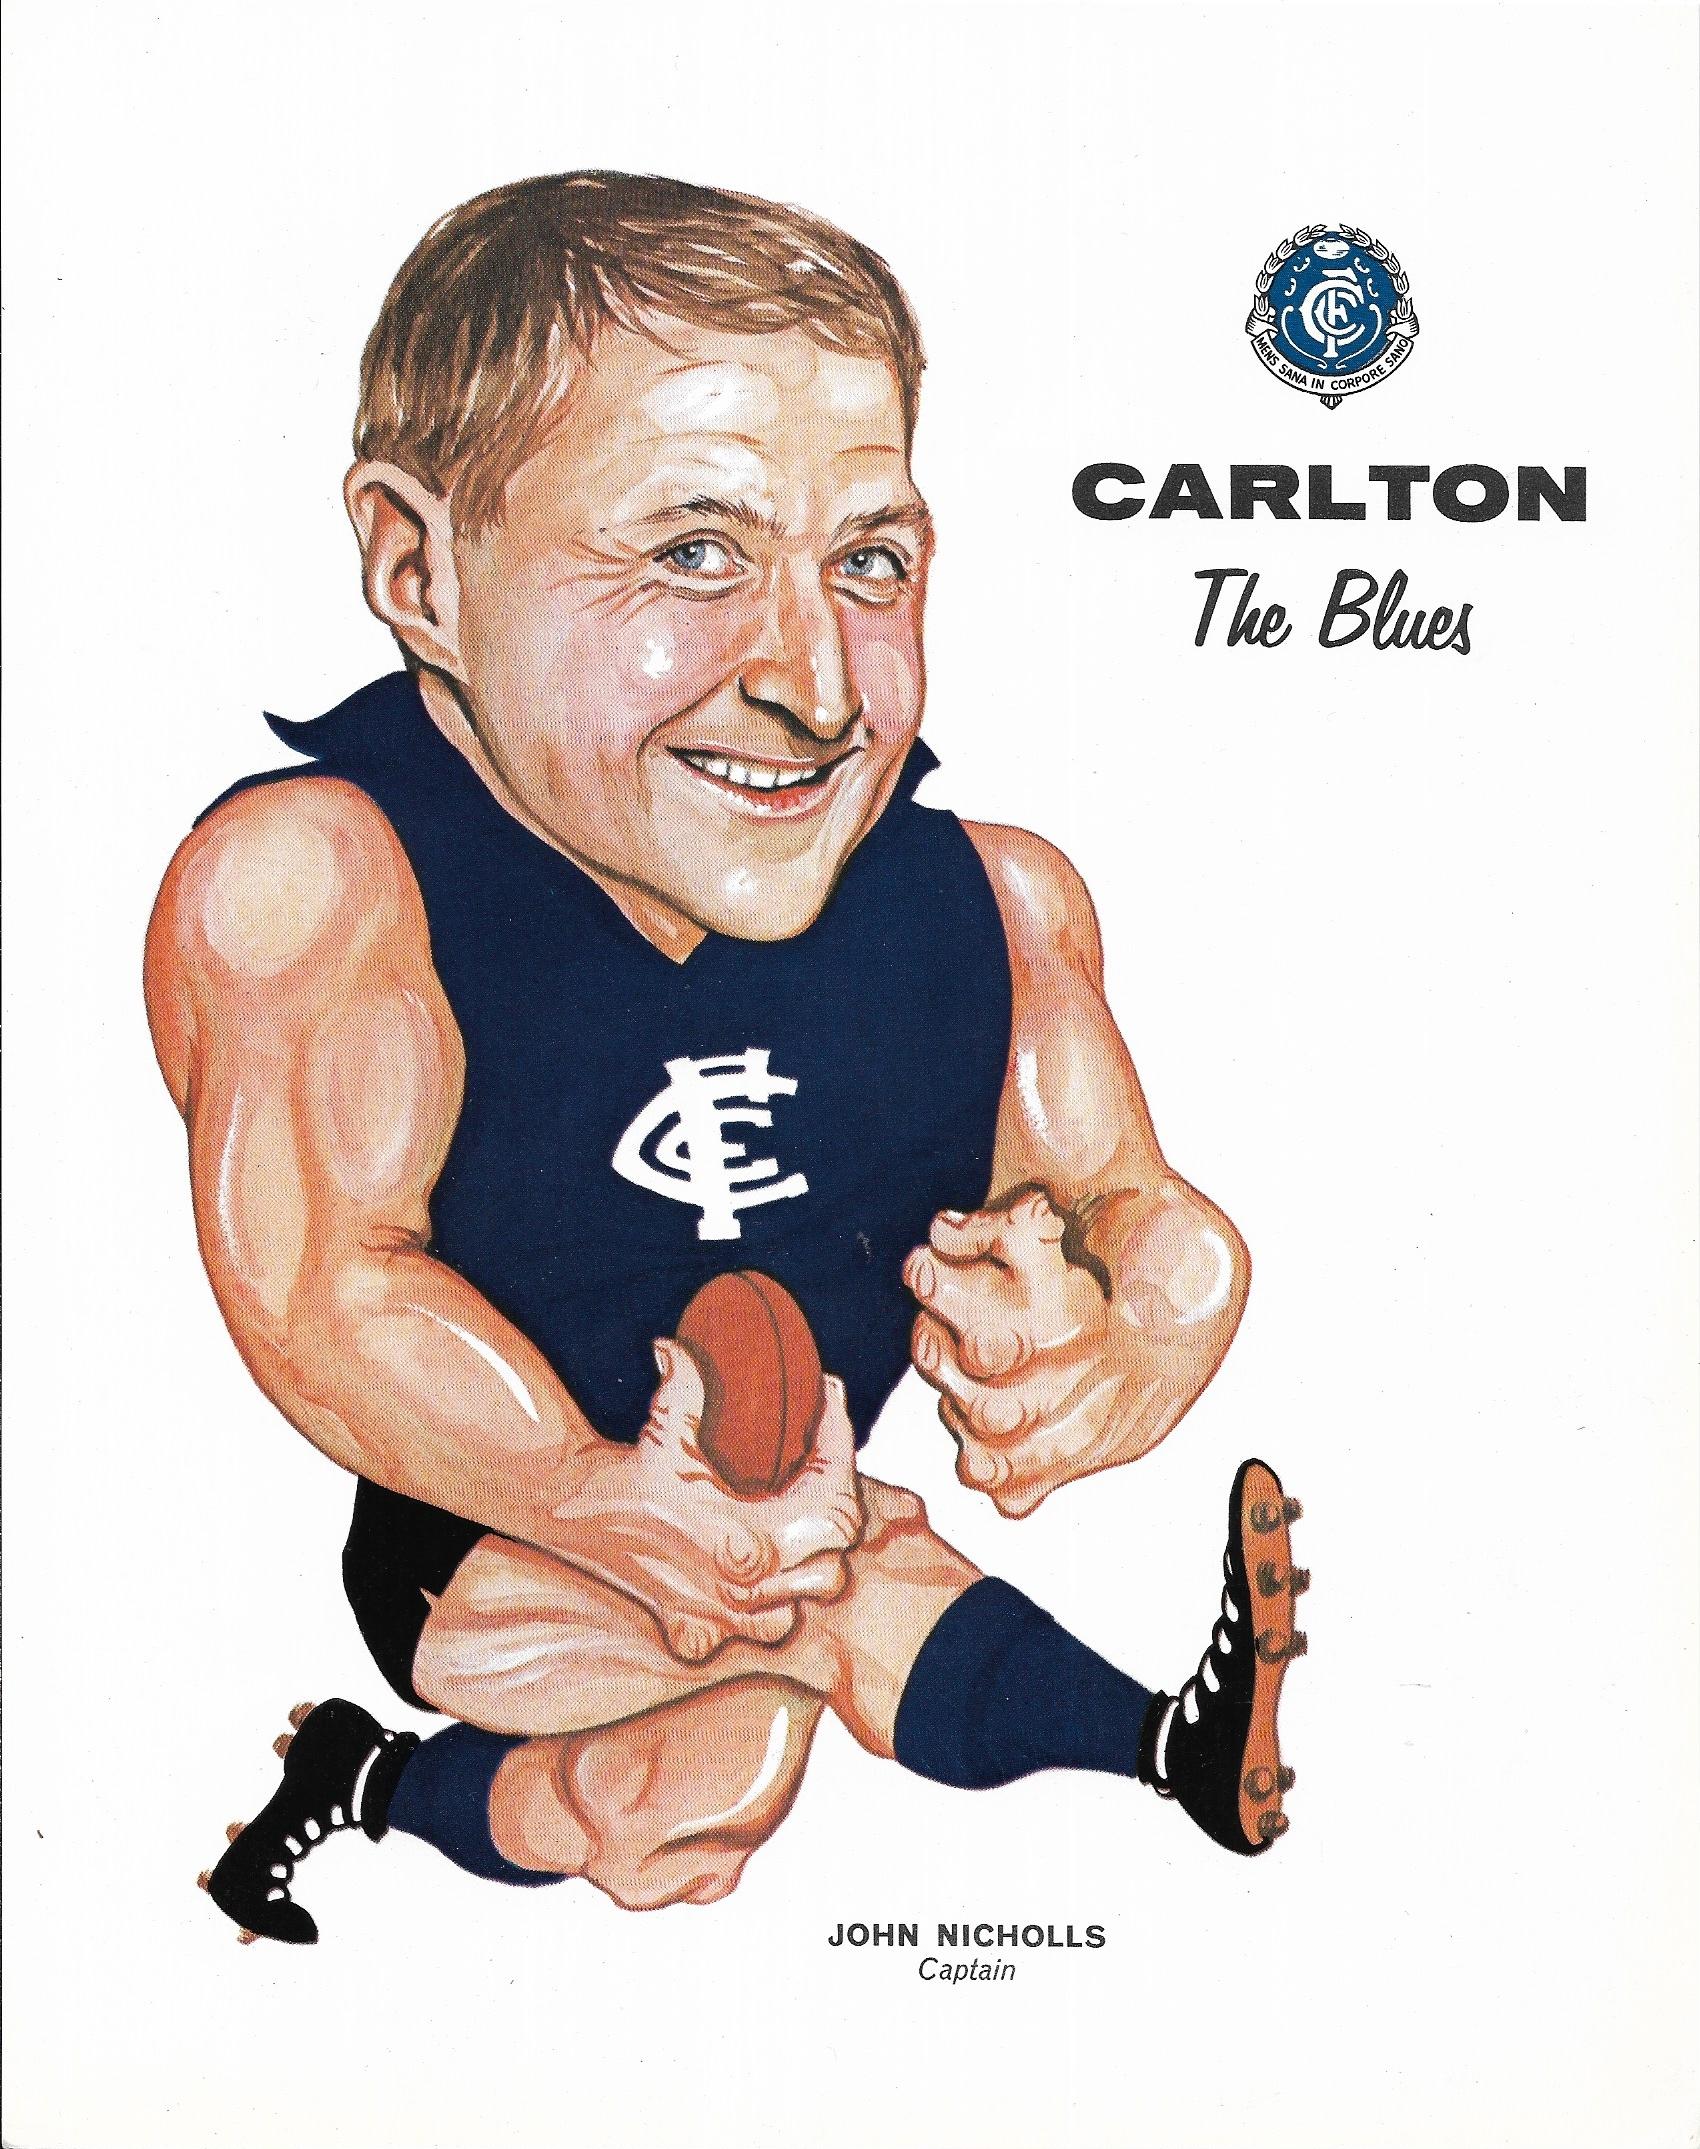 1969 Twisties Captain Poster Carlton – John Nicholls (Near Mint)